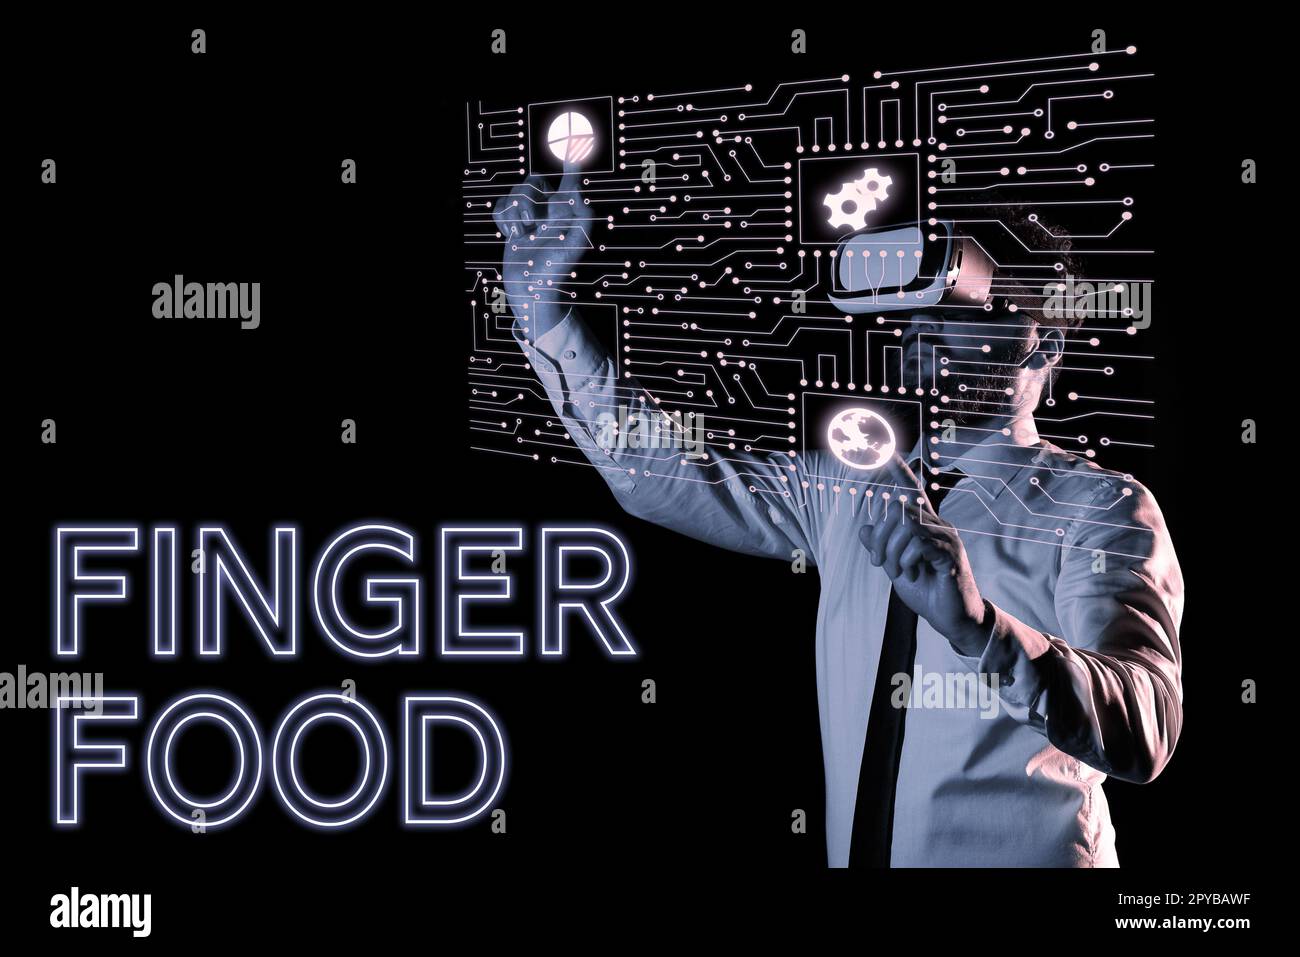 Affiche manuscrite Finger Food. Internet concept produits et digestifs qui doit être tenu avec les doigts pour manger Banque D'Images